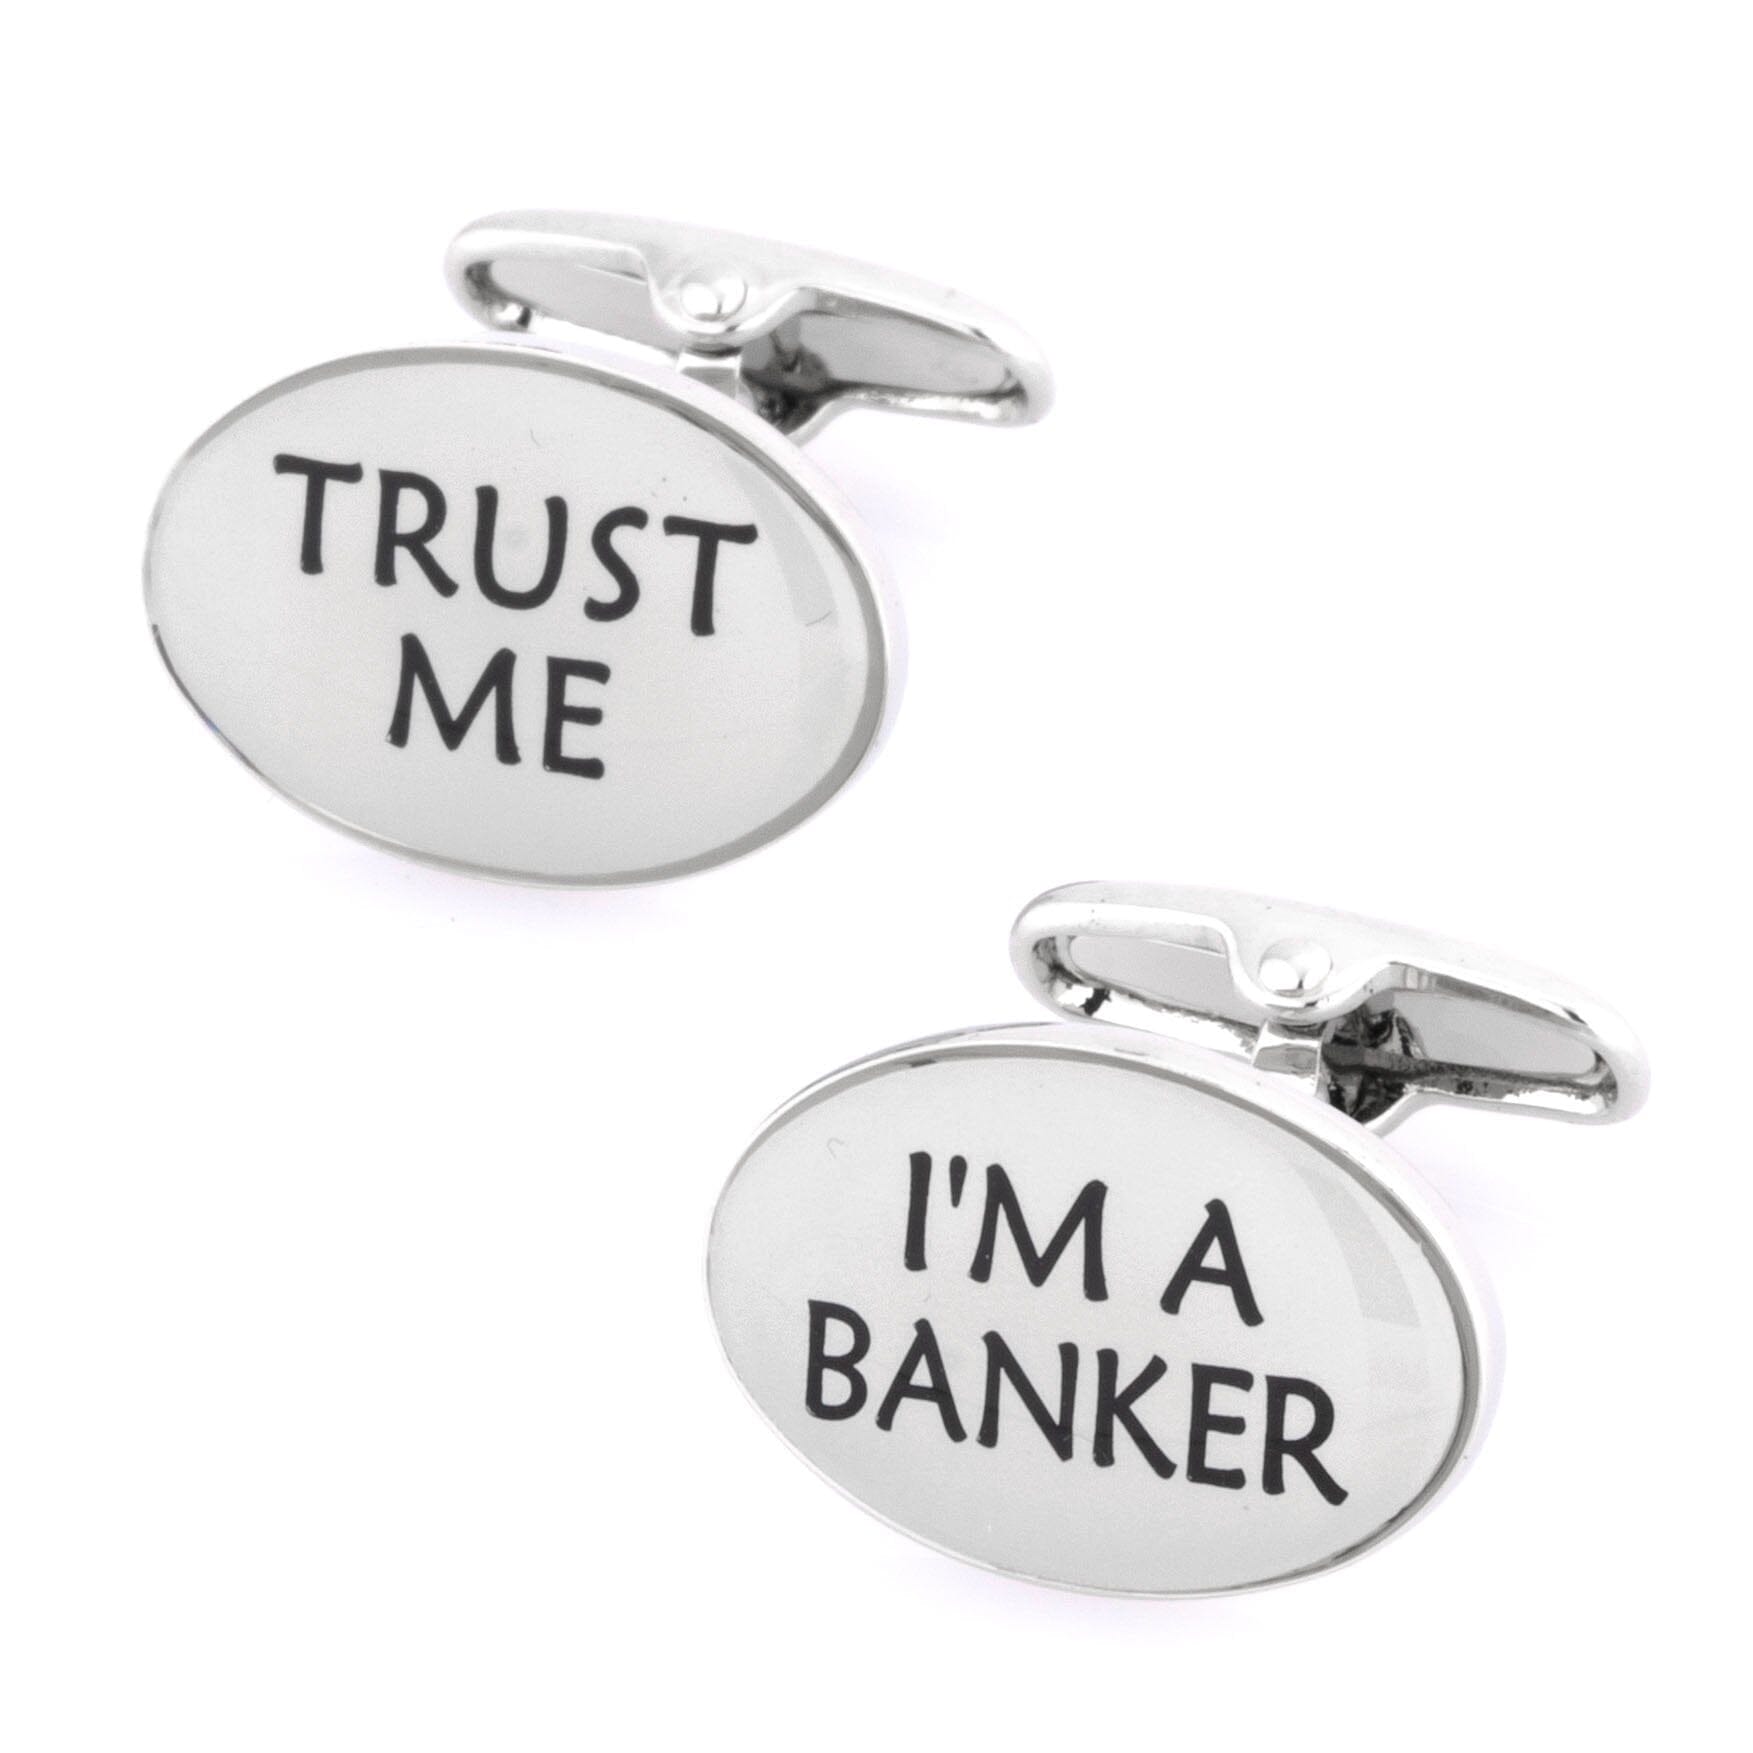 Trust Me I'm a Banker Cufflinks Novelty Cufflinks Clinks Australia 